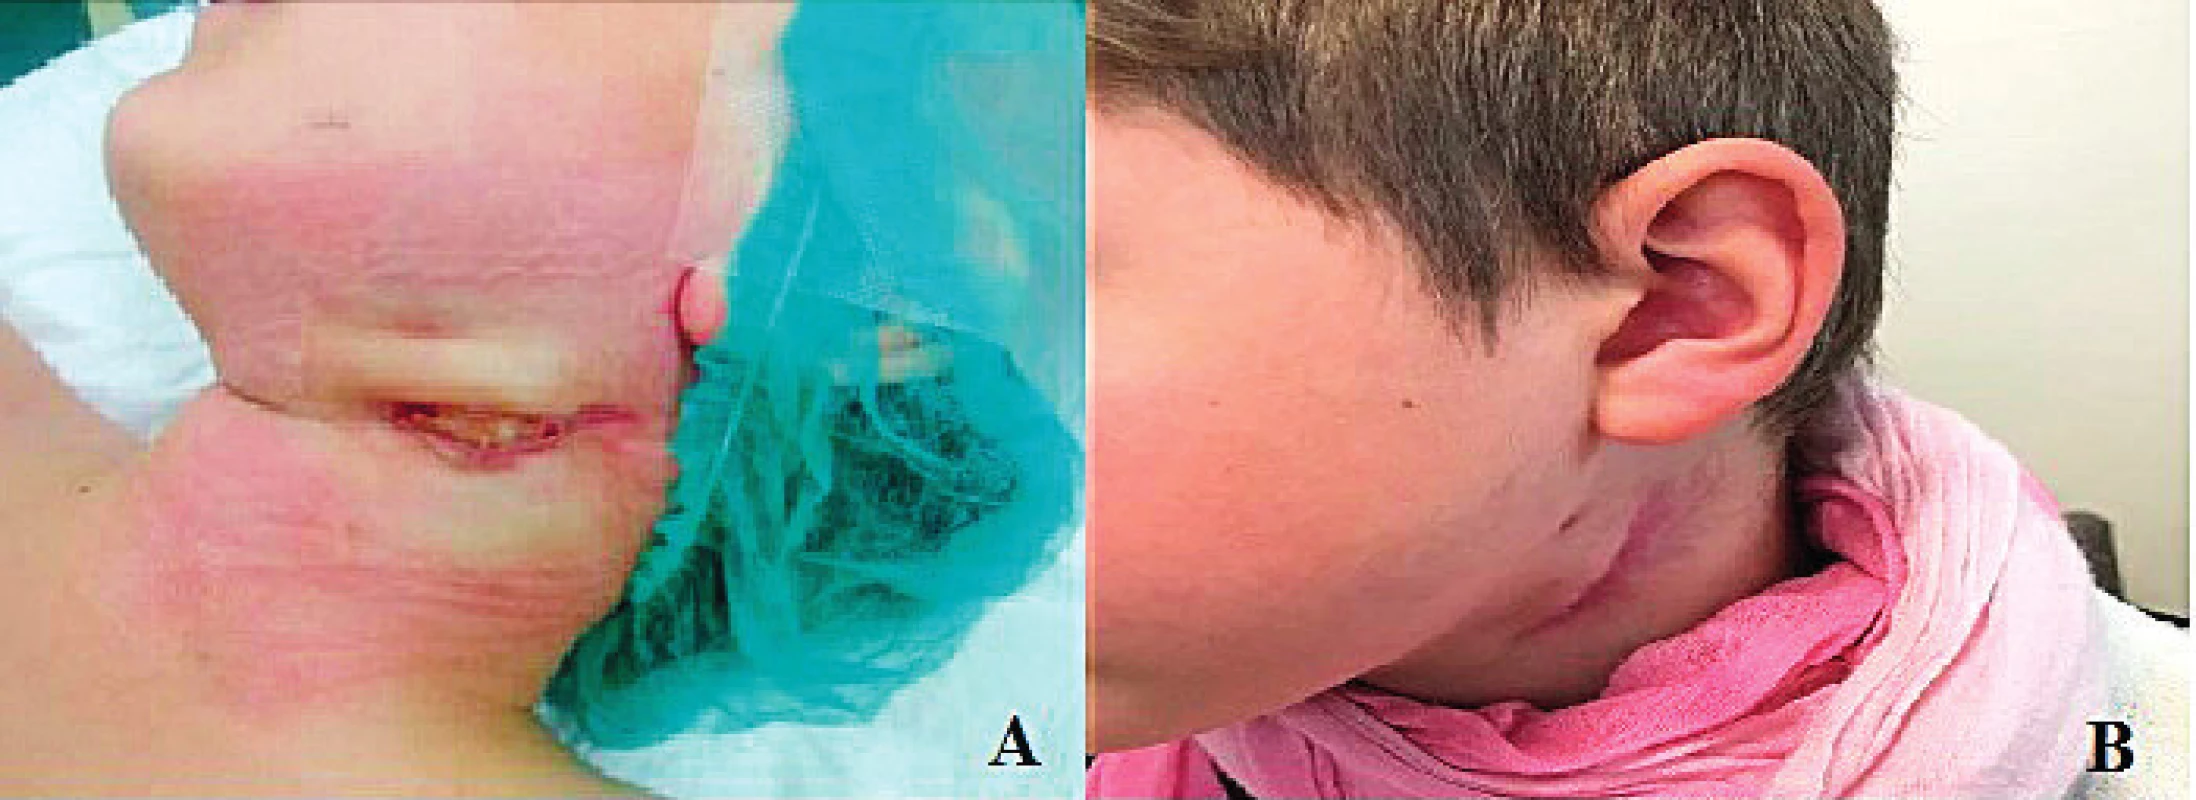 Nález pred (A) a po (B) tretej reoperácii
pre dehiscentnú ranu na krku.